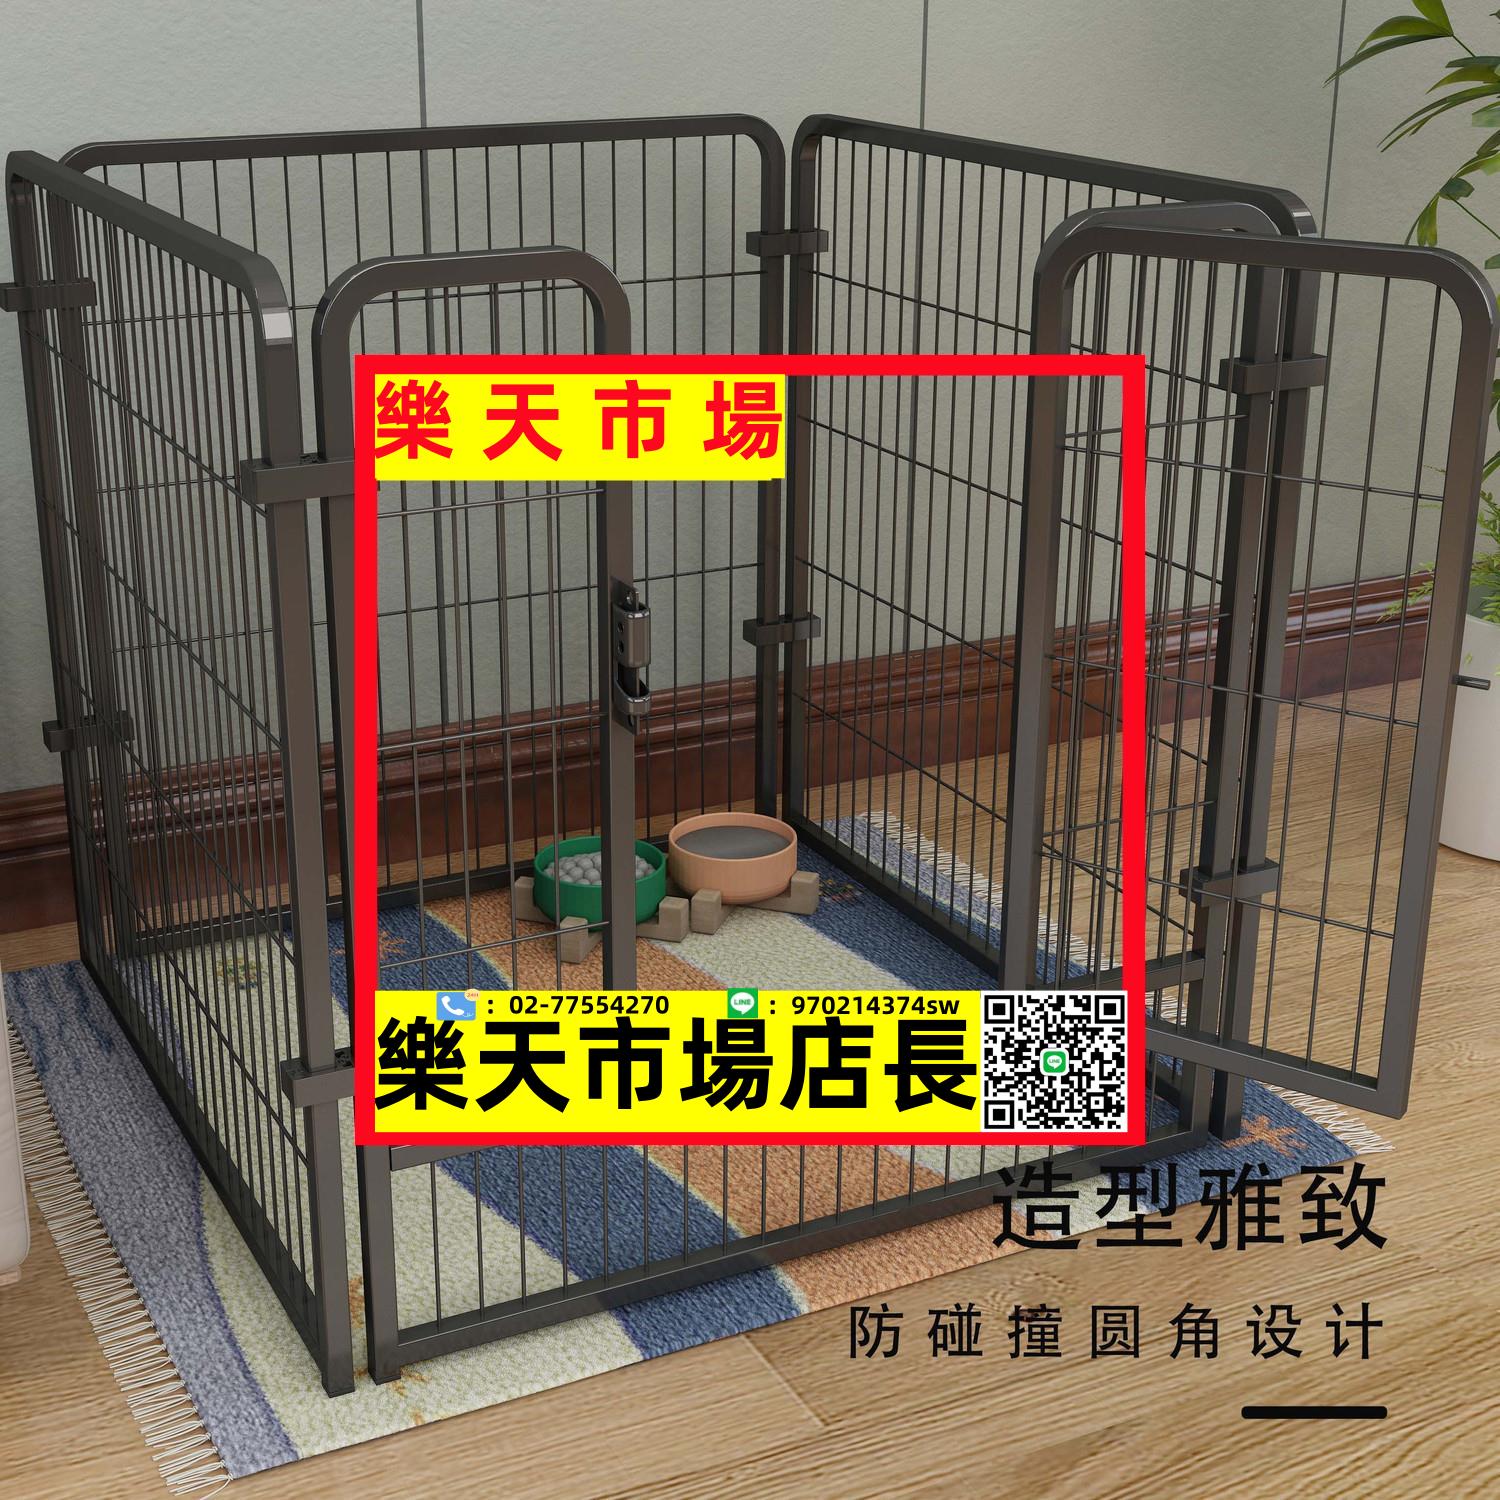 狗籠子狗圍欄家用室內寵物柵欄自由組合小中大型犬圍欄訓廁狗籠子